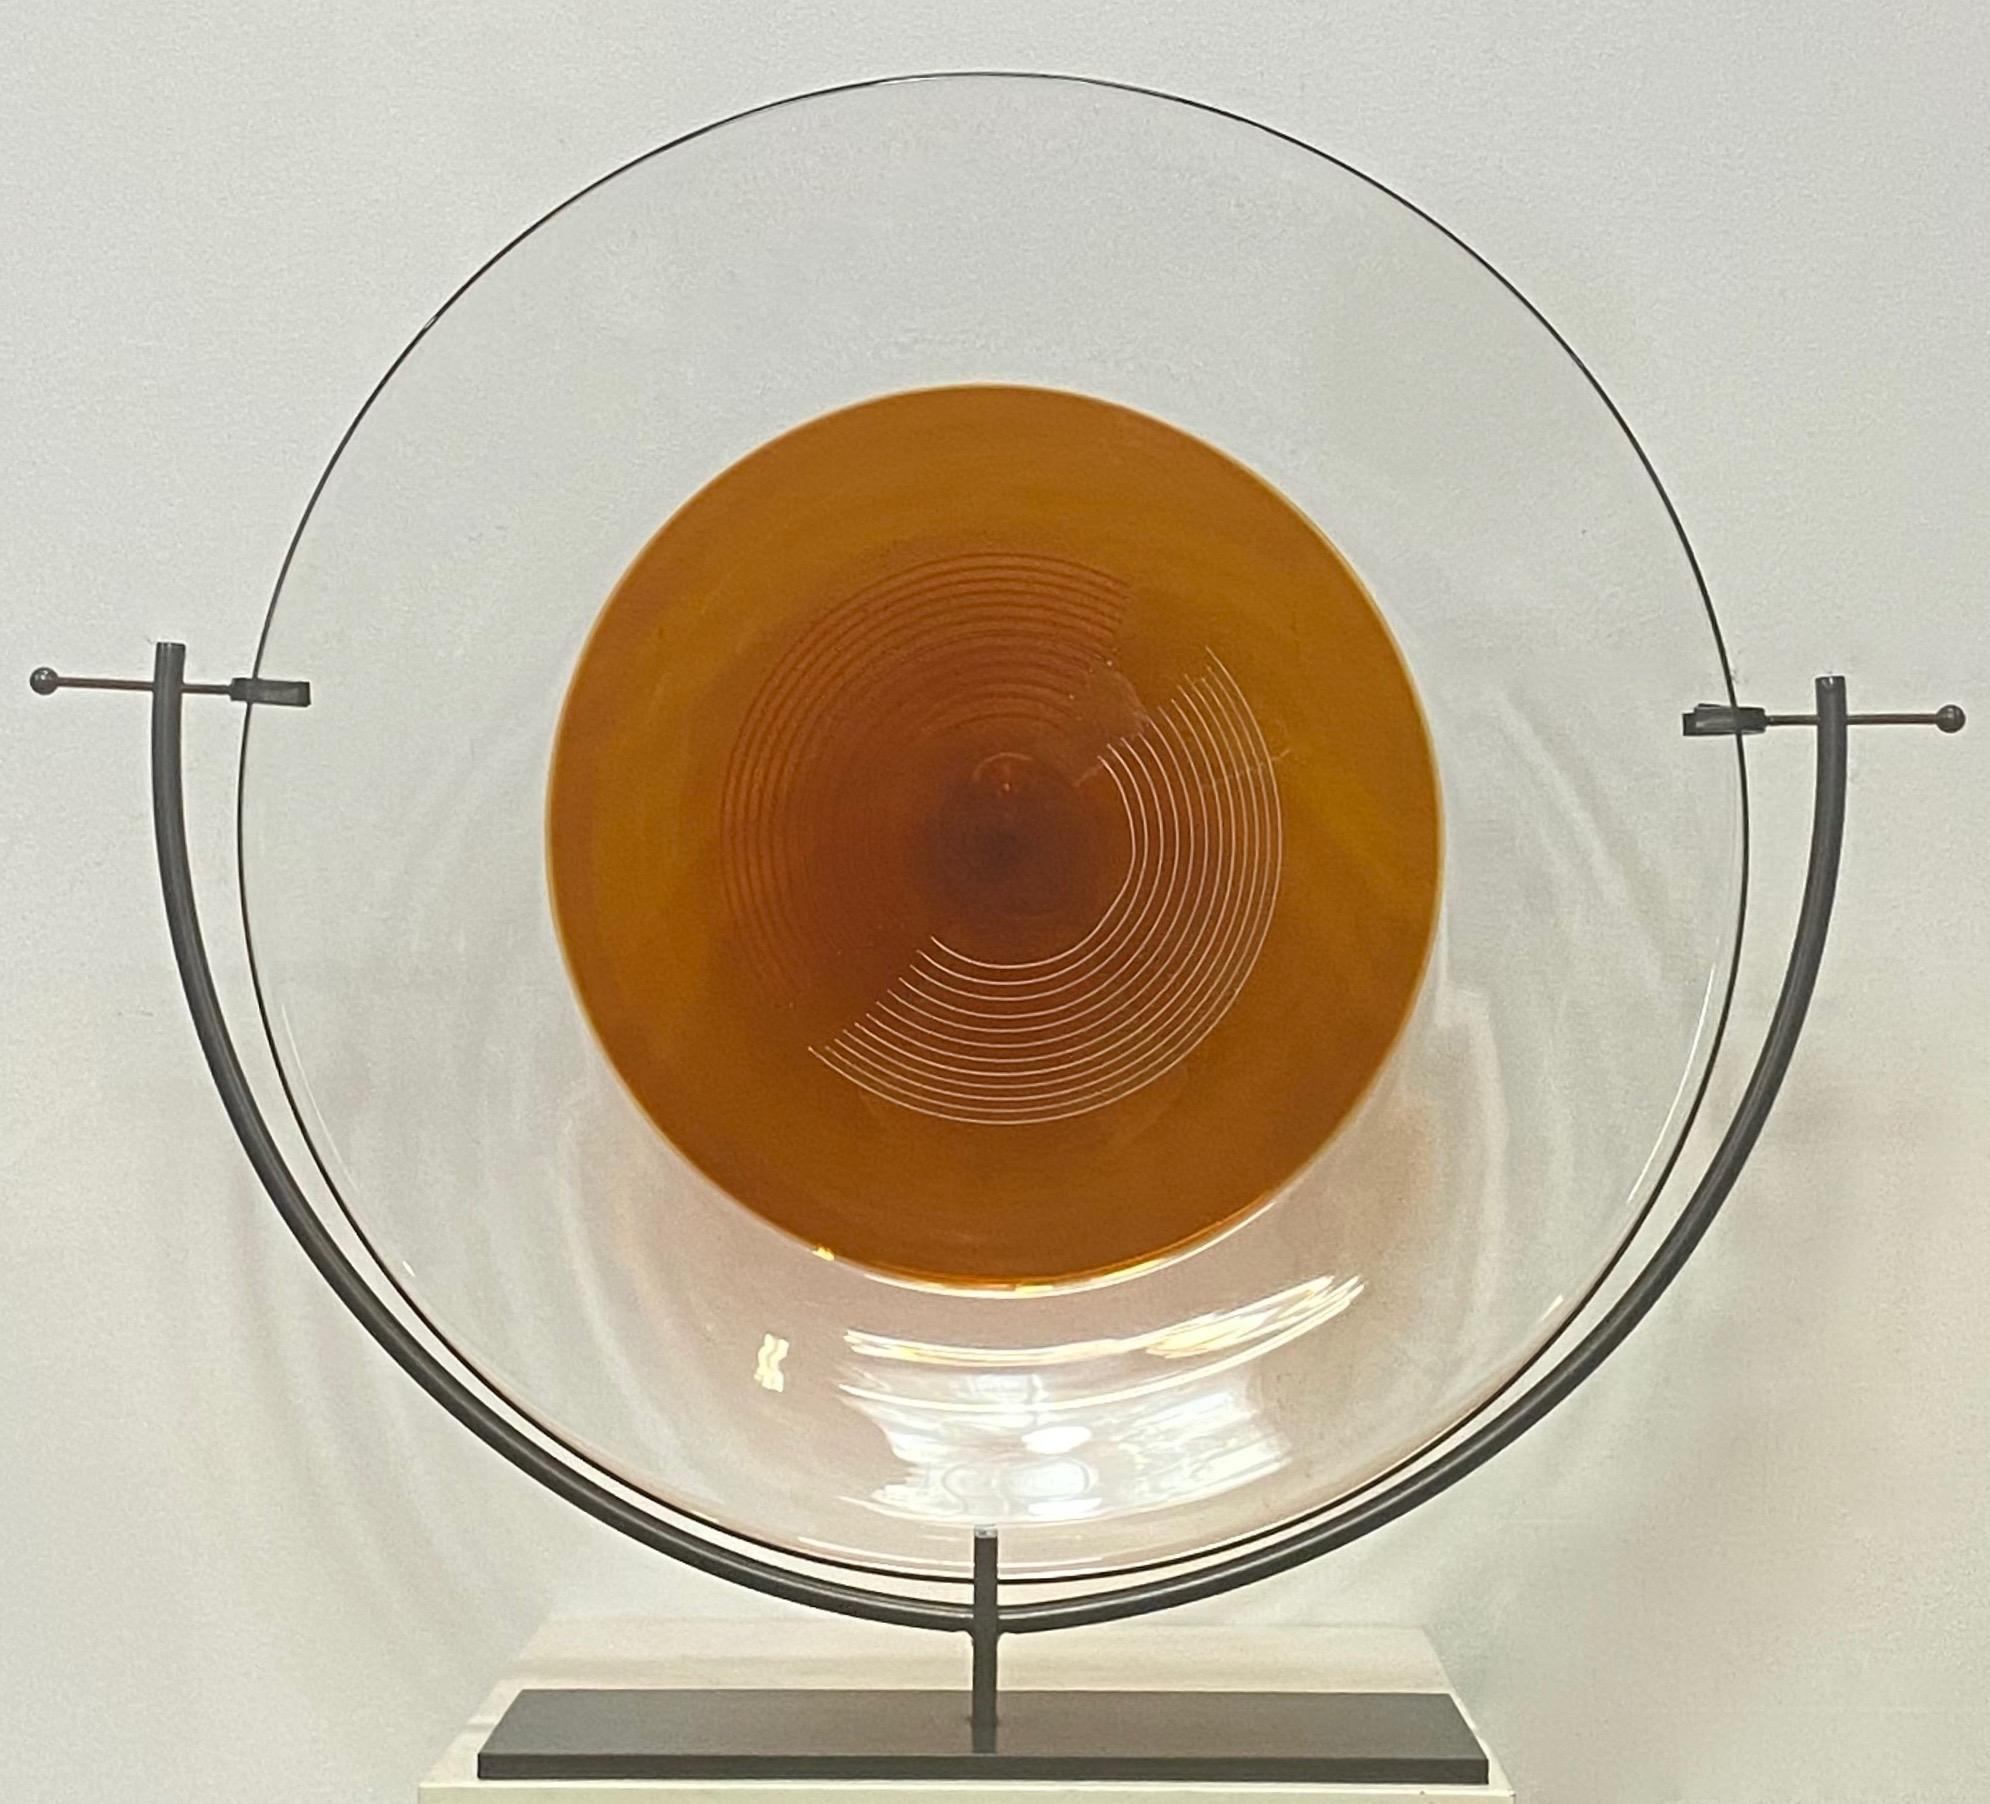 Eine absolut bemerkenswerte sehr große Kunst Glas Ladegerät / Skulptur auf Museum Qualität montieren. Markiert Salviati.
Italien, 20. Jahrhundert.
Das 1859 gegründete Unternehmen Salviati ist nach wie vor eine der renommiertesten Glasmanufakturen in